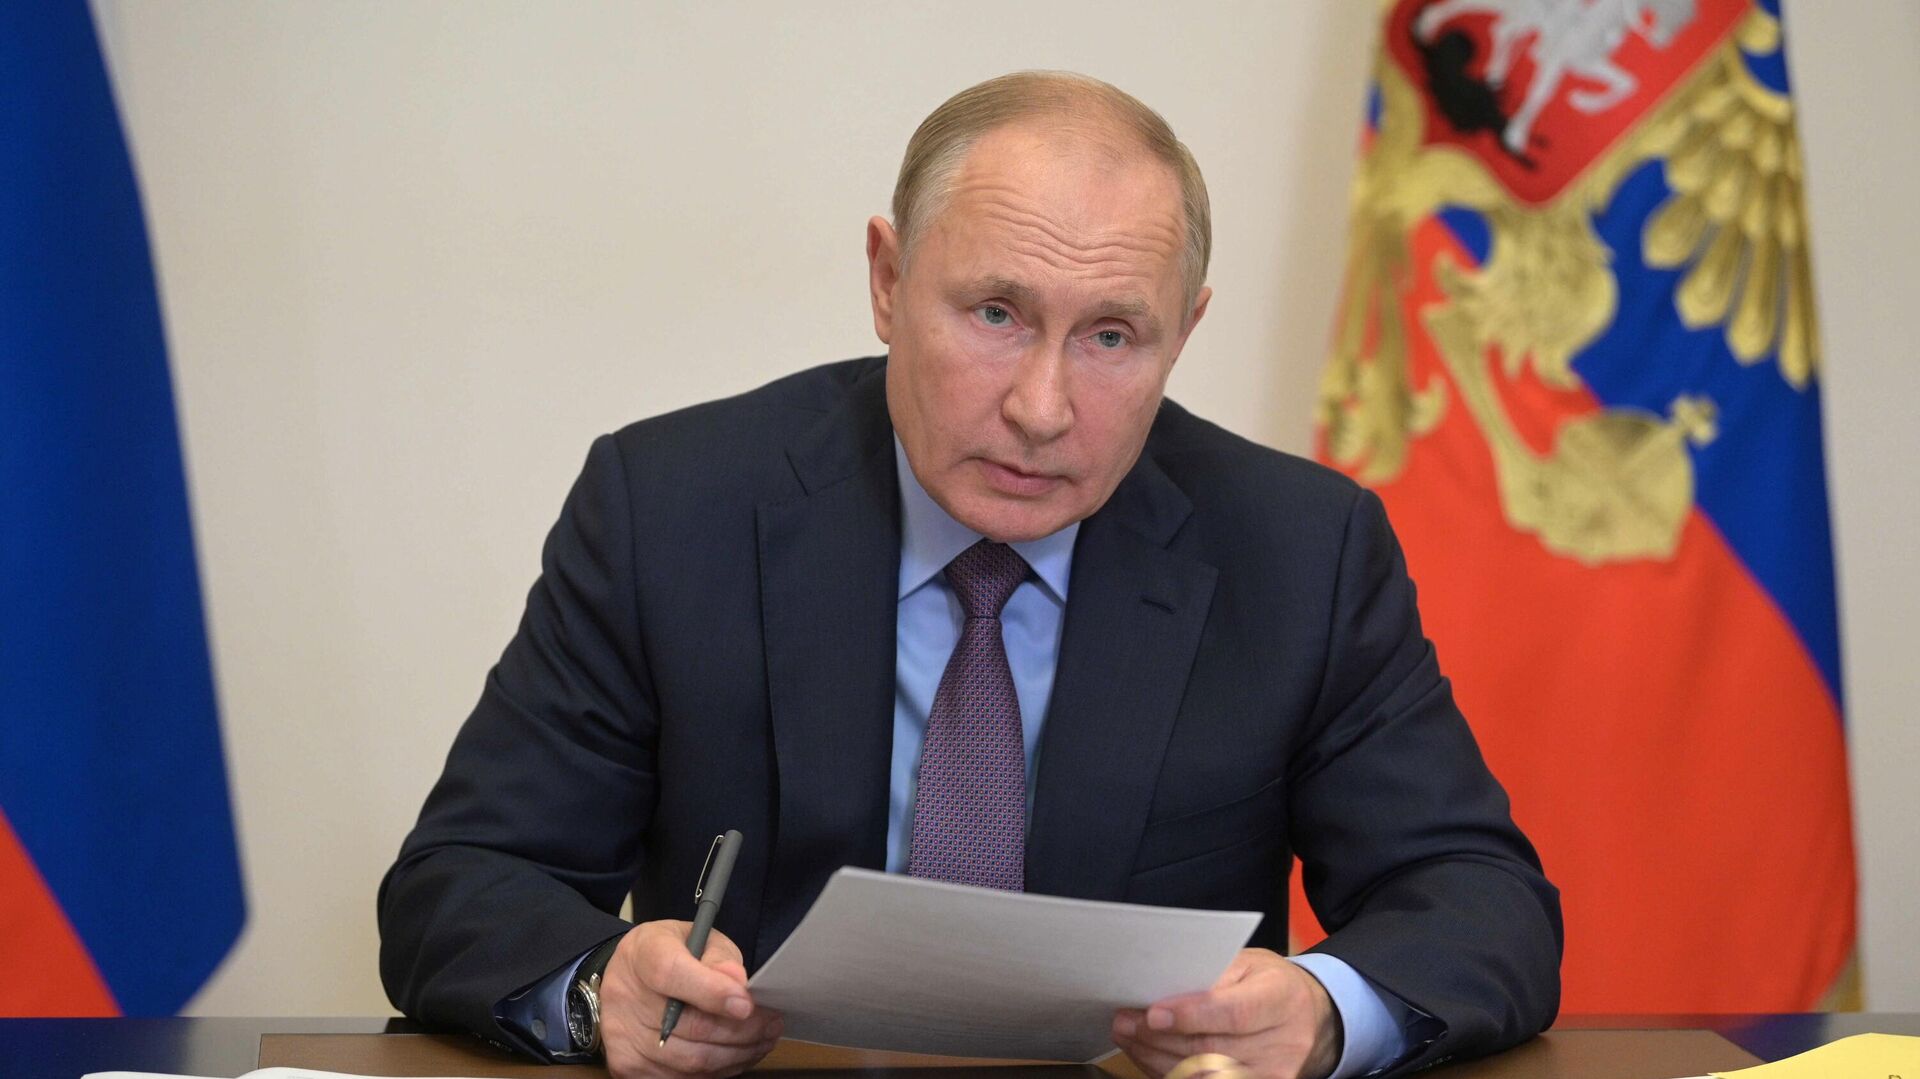 Взвешенная политика позволила поддержать людей и экономику, заявил Путин